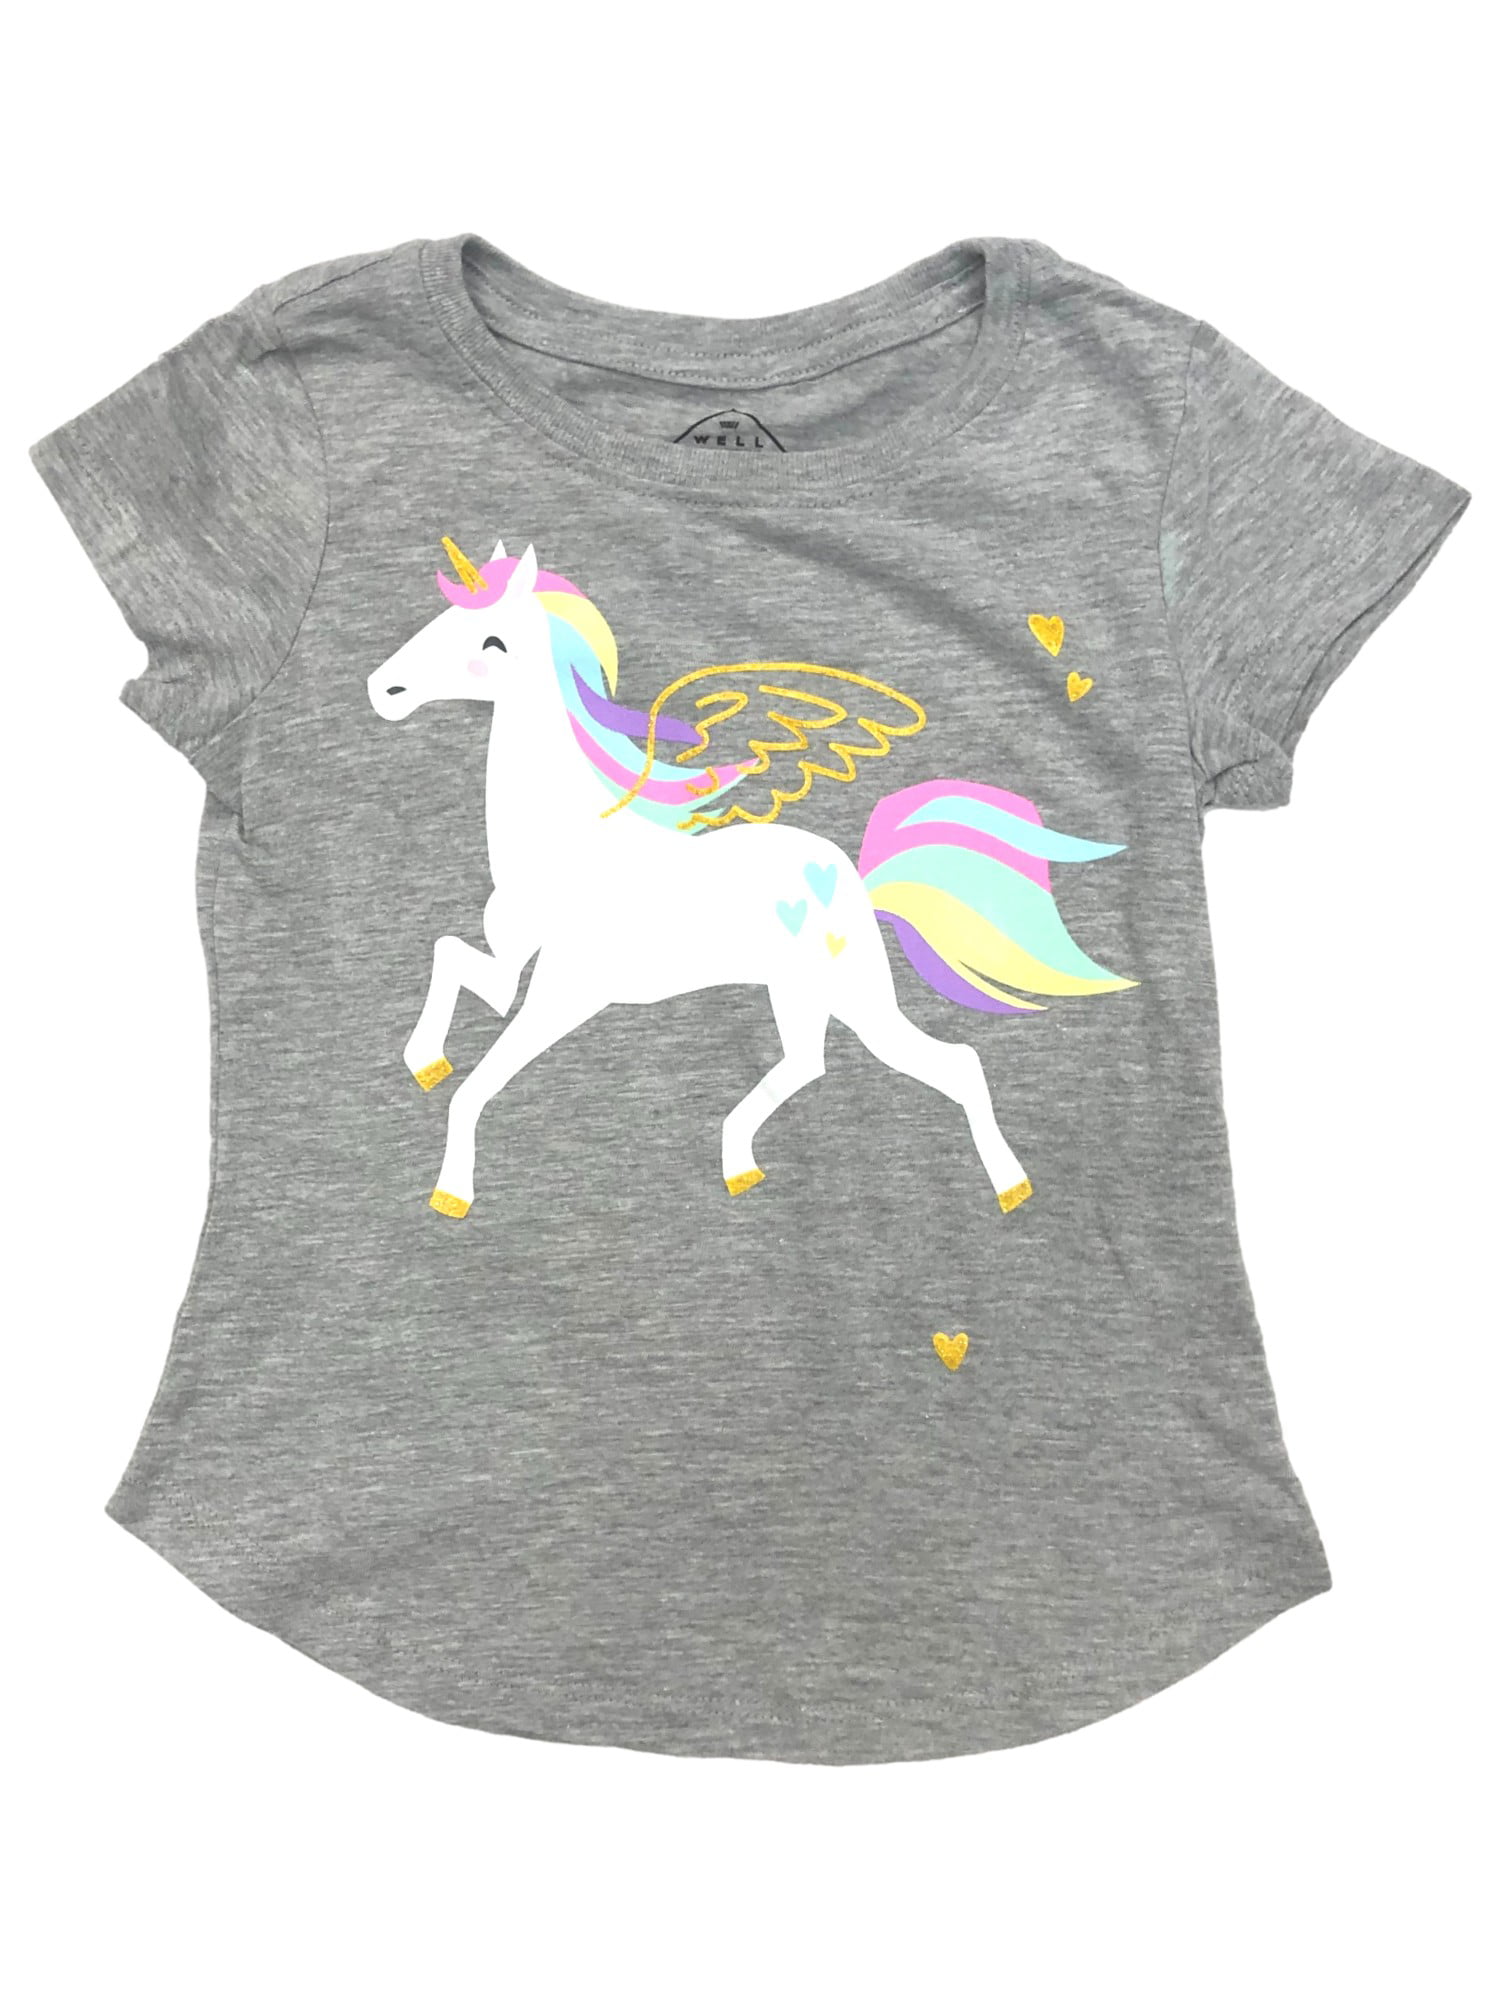 90% Unicorn 10% Sparkle t-shirt 